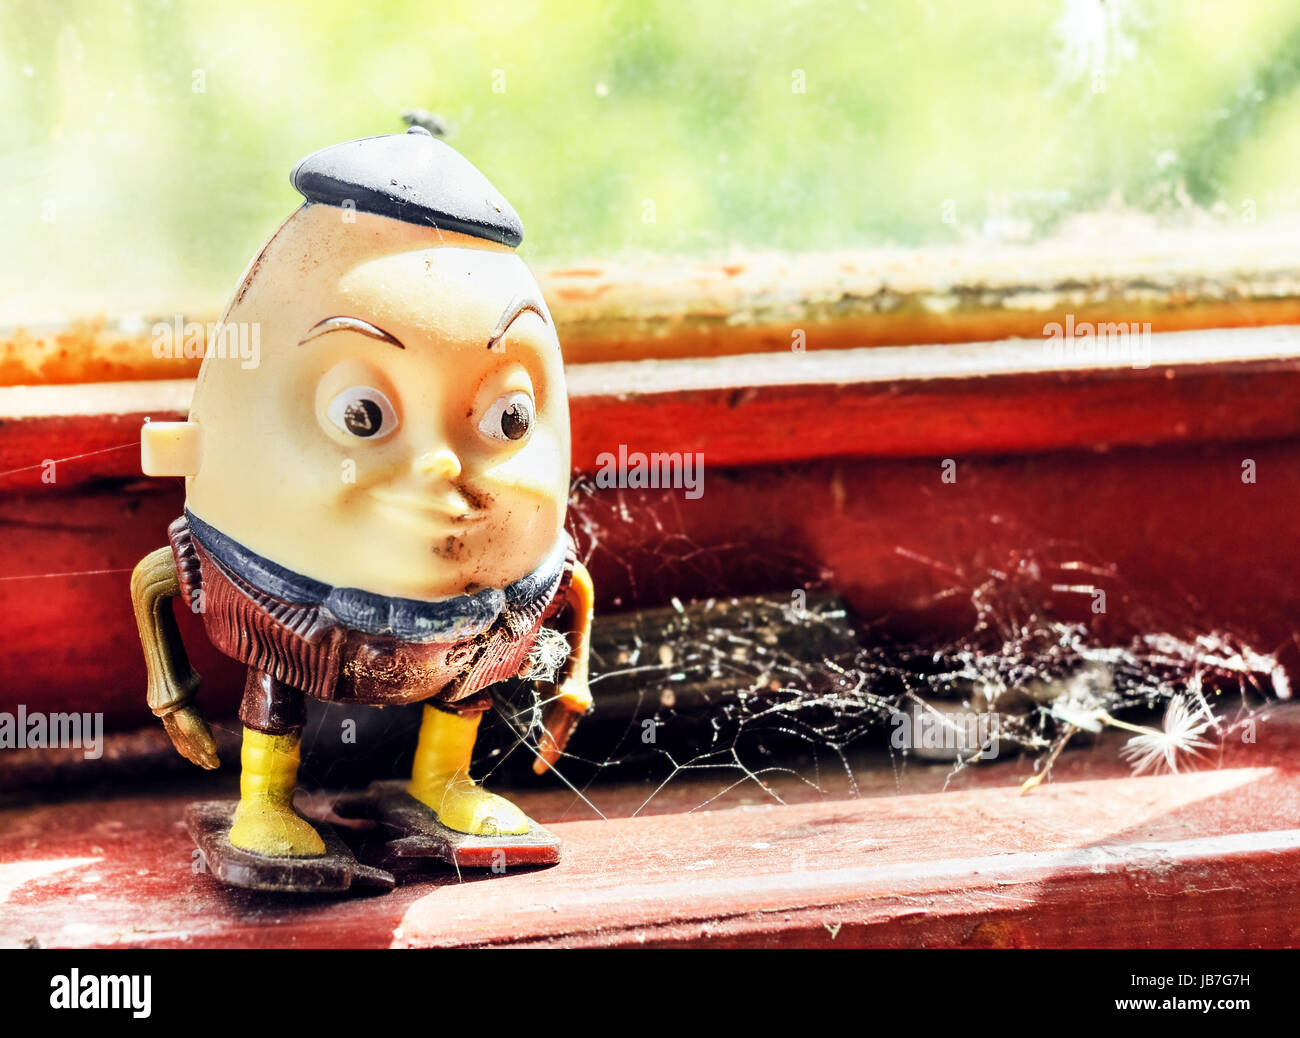 Humpty Dumpty giocattolo vecchio per immagini editoriale Foto Stock